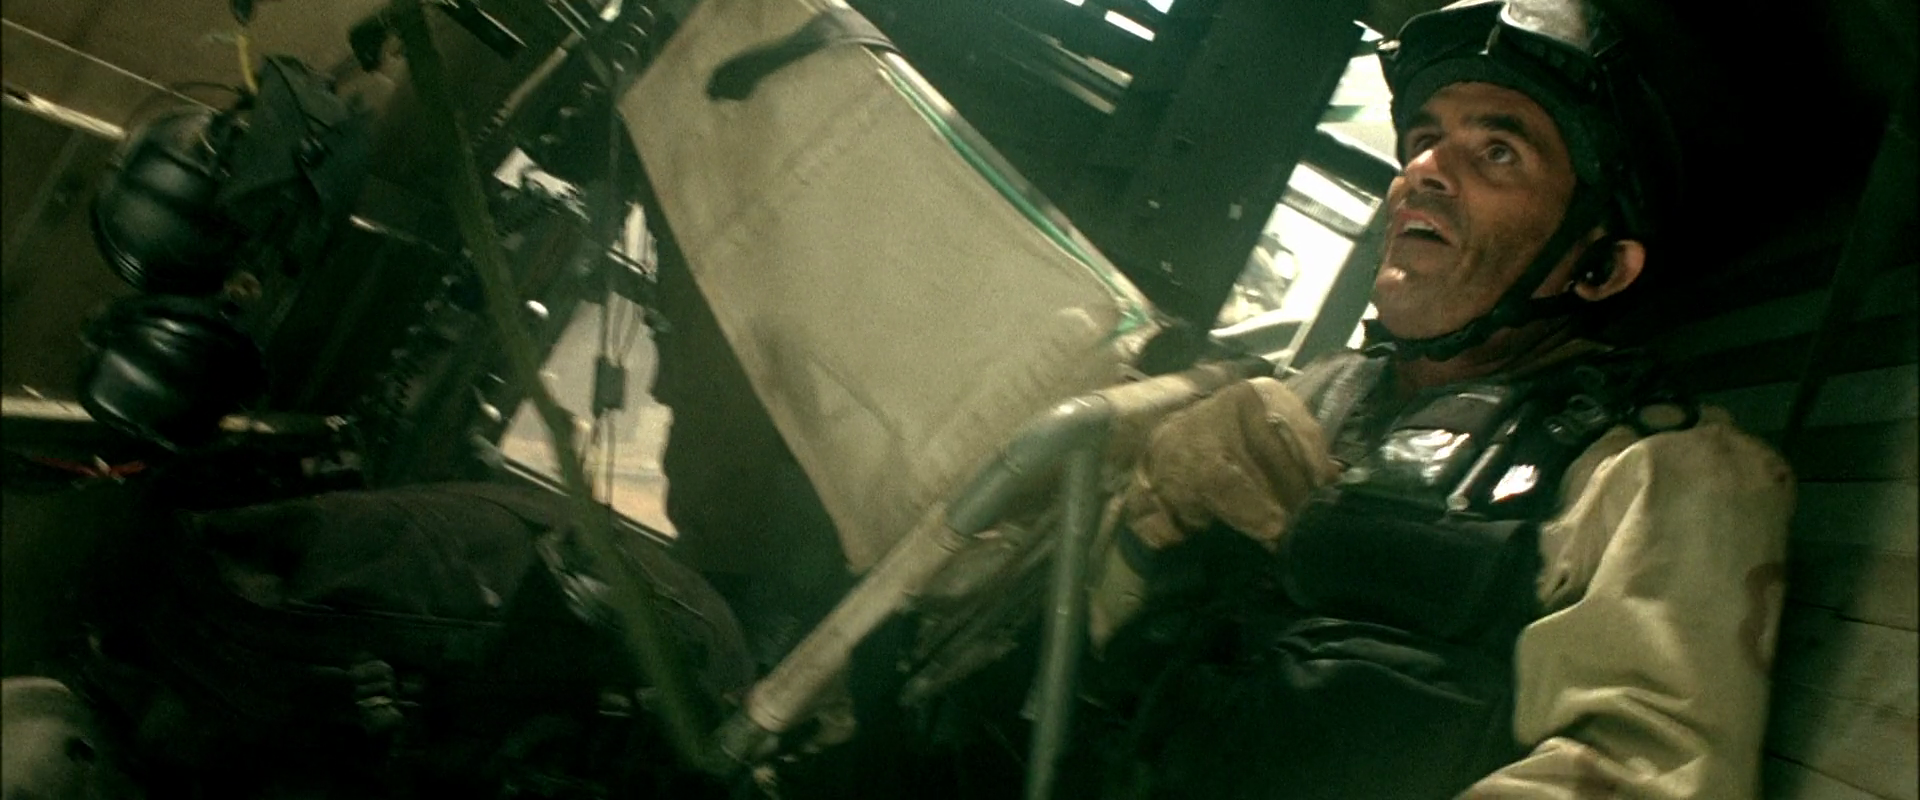 Ty Burrell as Wilkinson in Black Hawk Down